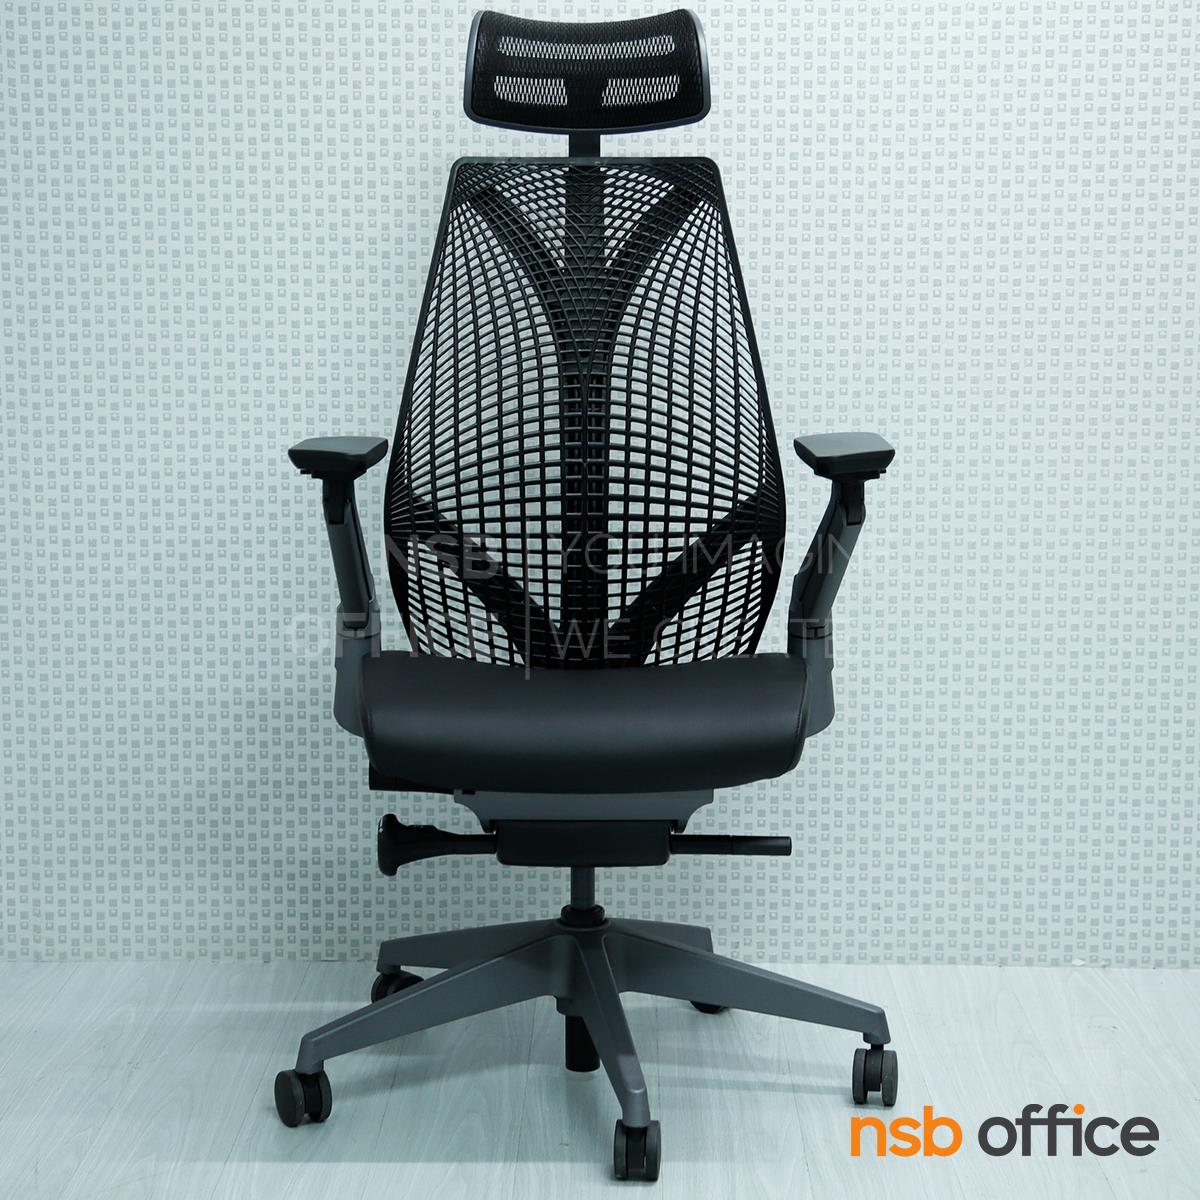 เก้าอี้เพื่อสุขภาพ รุ่น Trevor (เทรเวอร์)  ขาพลาสติก ผลิตจากพลาสติกวิศวกรรมประสิทธิภาพสูง